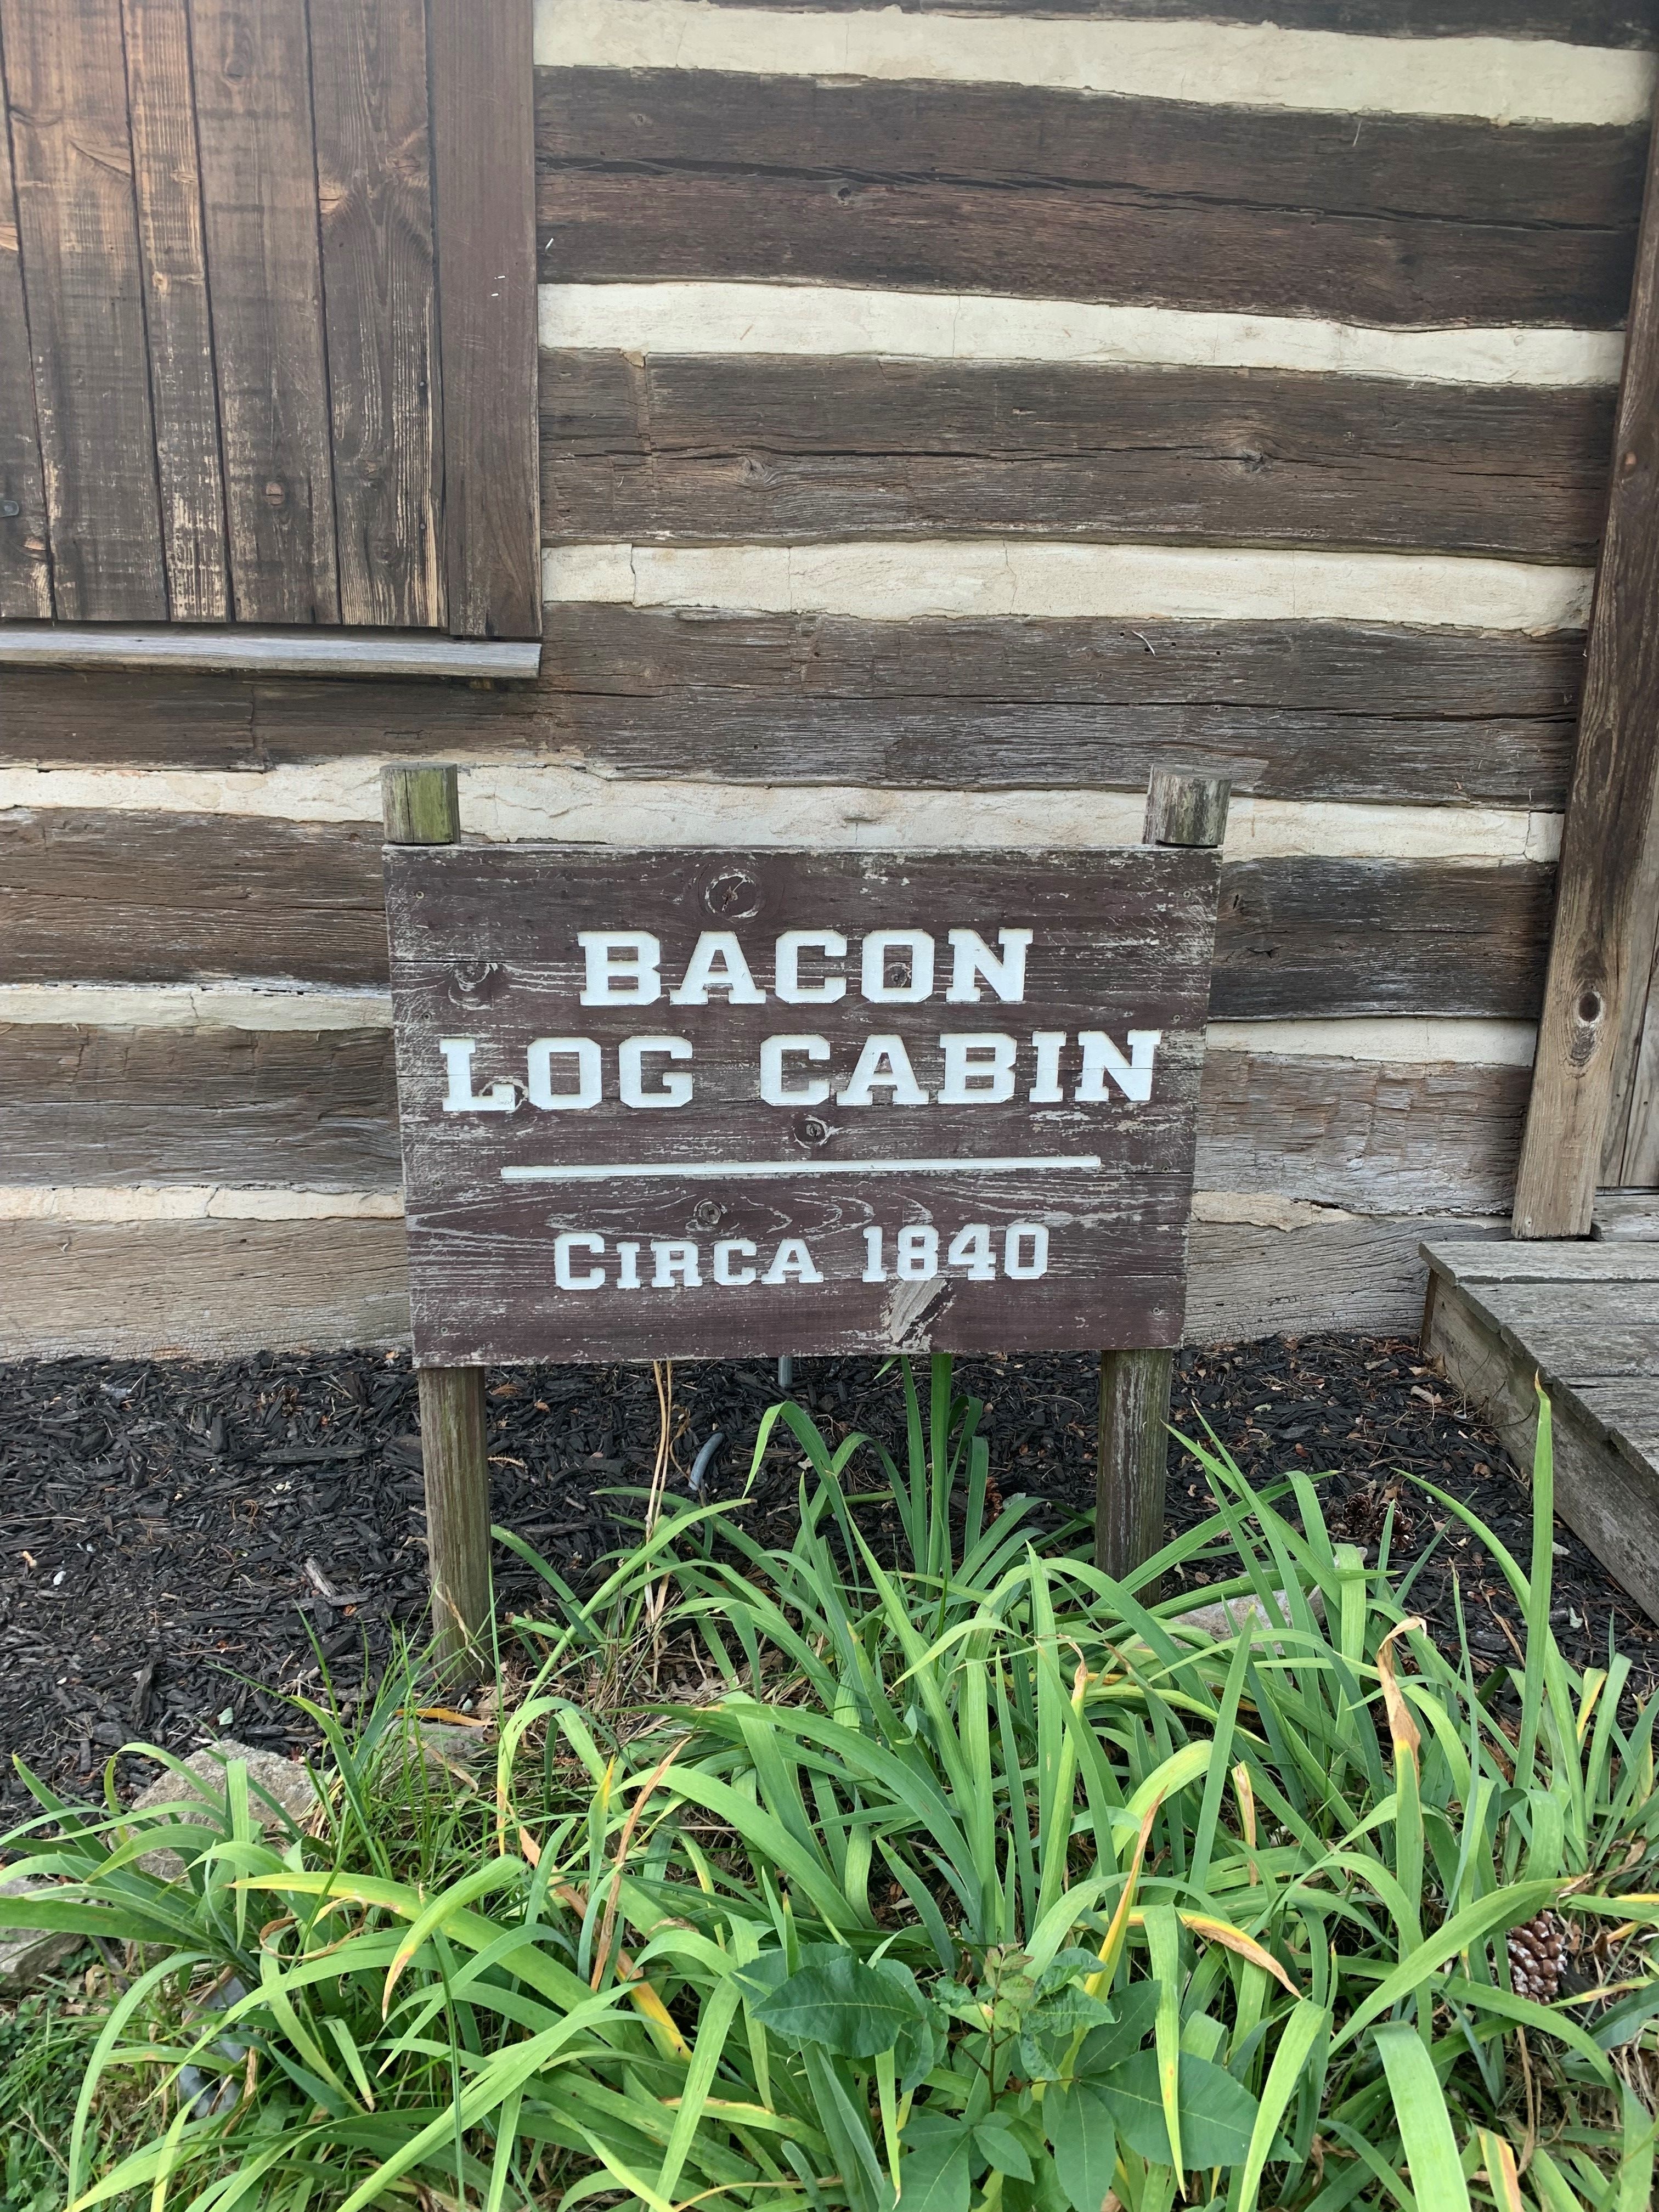 Bacon Log Cabin signage